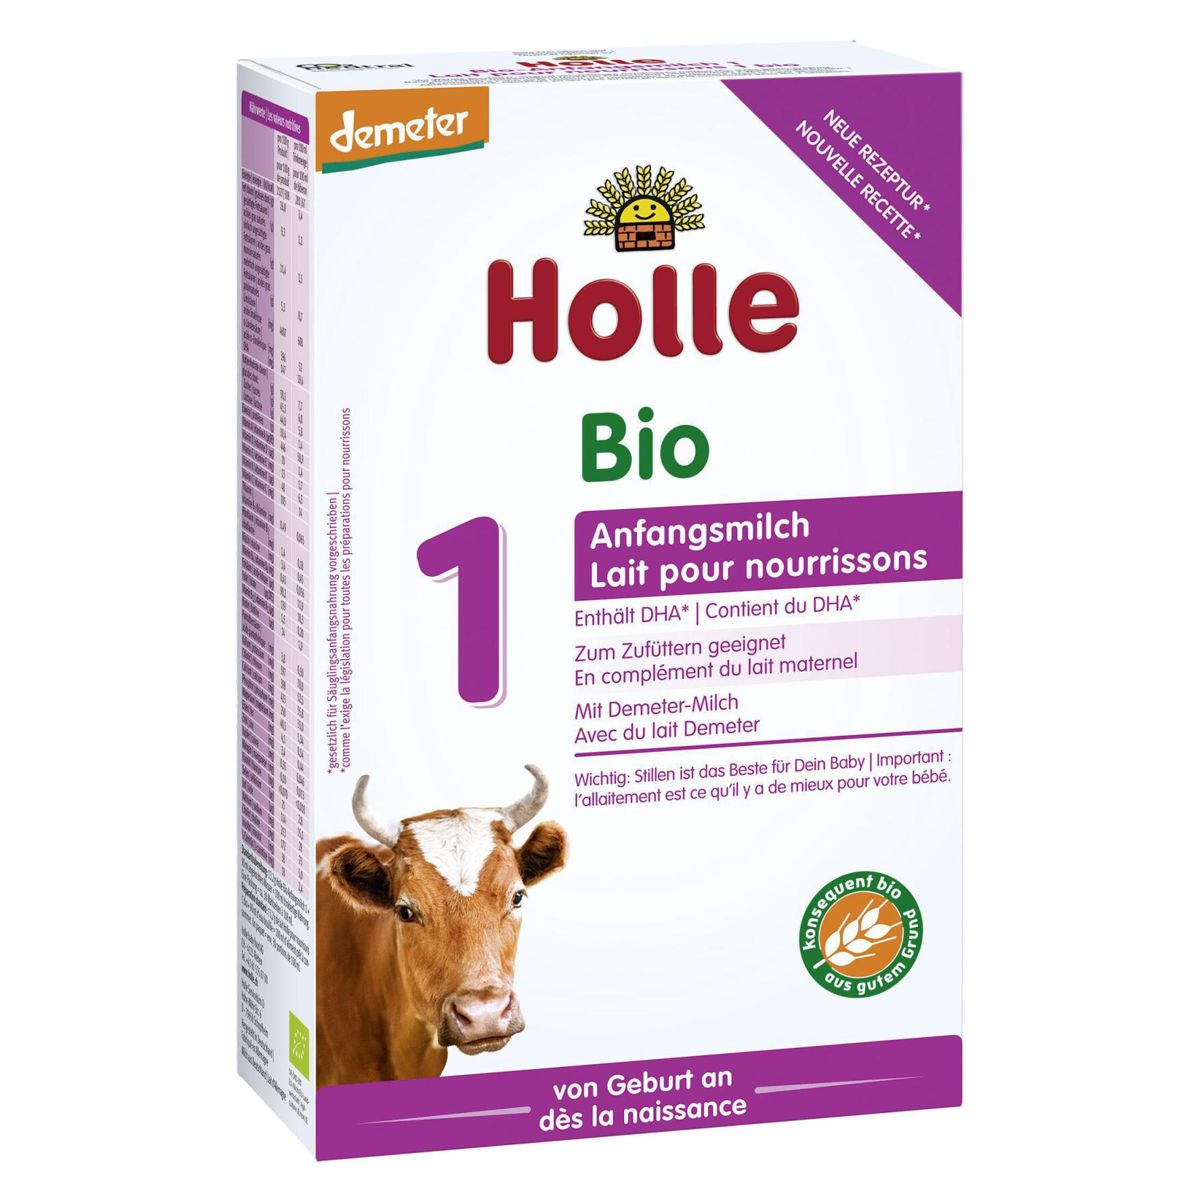 Holle_Bio_Anfangsmilch_1_400g_kaufen